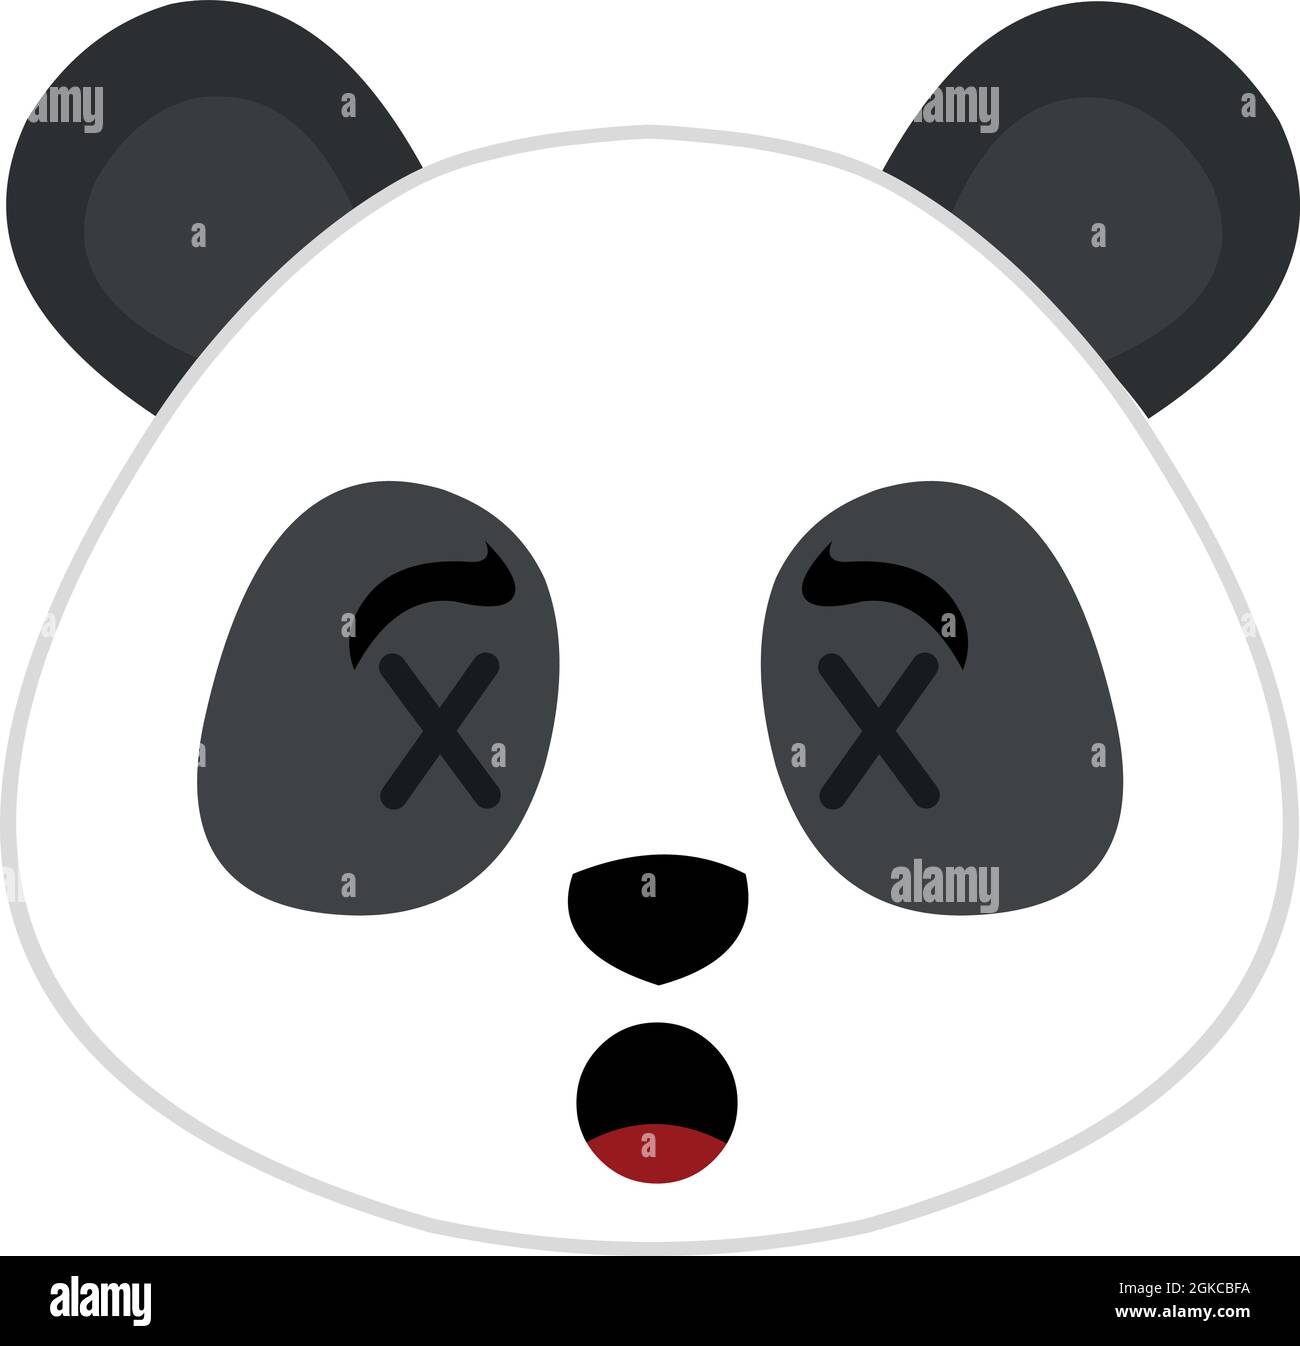 Illustrazione di emoticon vettoriale della testa di un orso panda con occhi  a forma di croci, concetto di morte Immagine e Vettoriale - Alamy